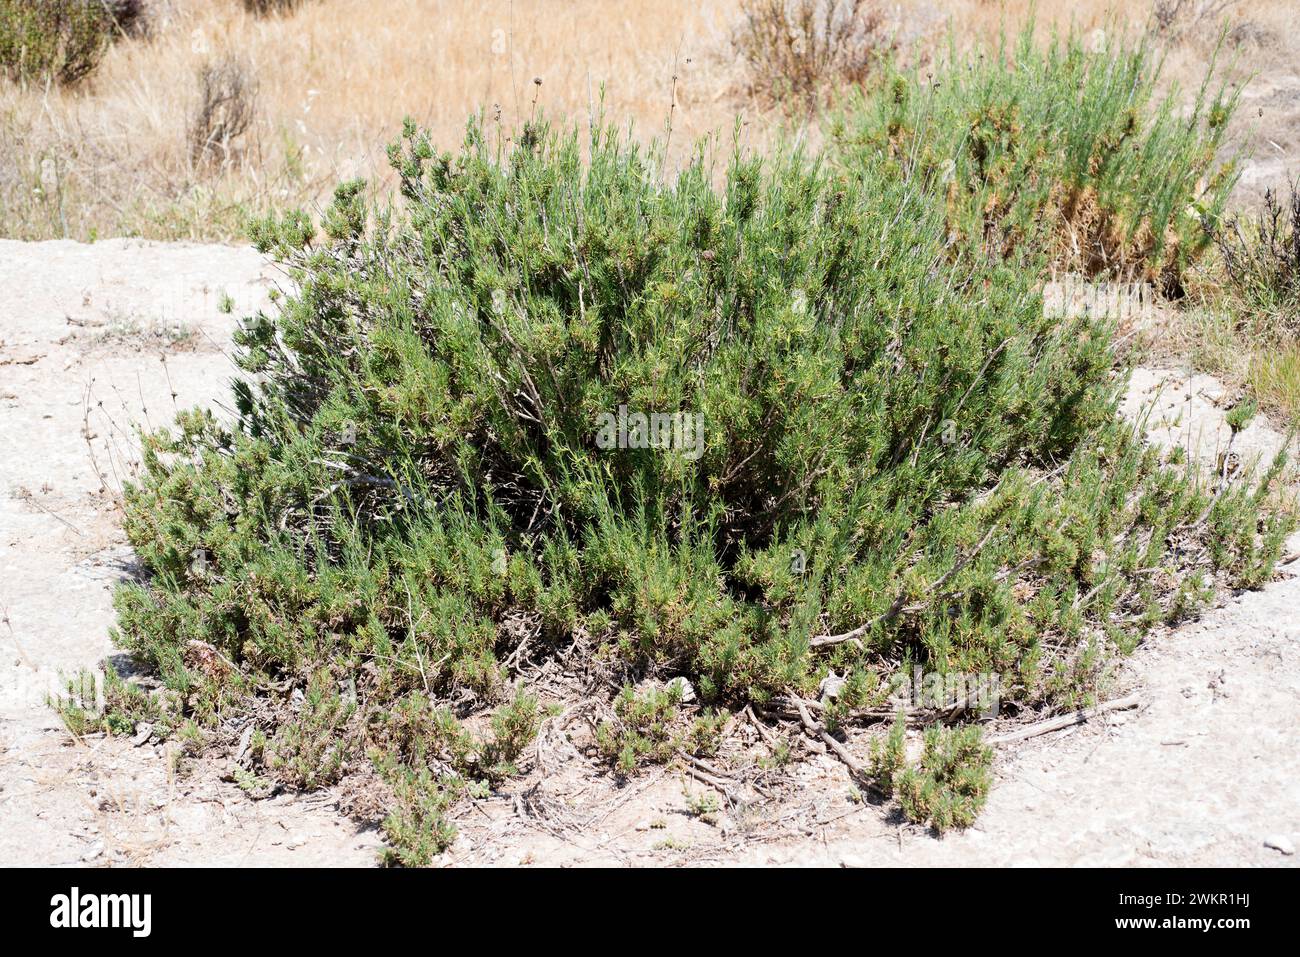 Albada o jabonera blanca (Gypsophila struthium) is a perennial plant endemic to gypsum soils of Spain. This photo was taken in Sorbas, Almeria provinc Stock Photo